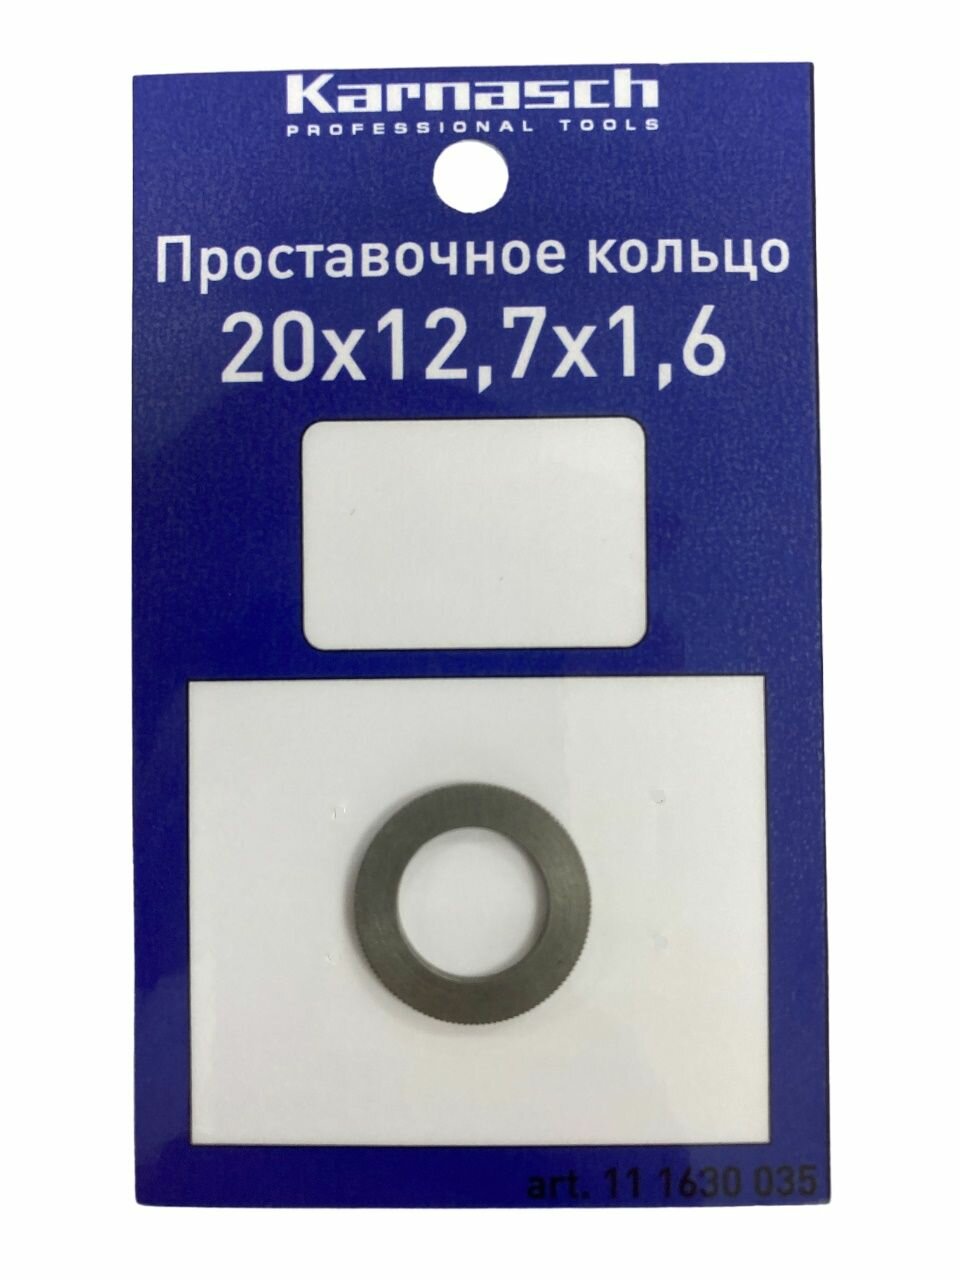 Кольцо переходное (проставочное) для пильных дисков Karnasch 20х12,7х1,6 мм